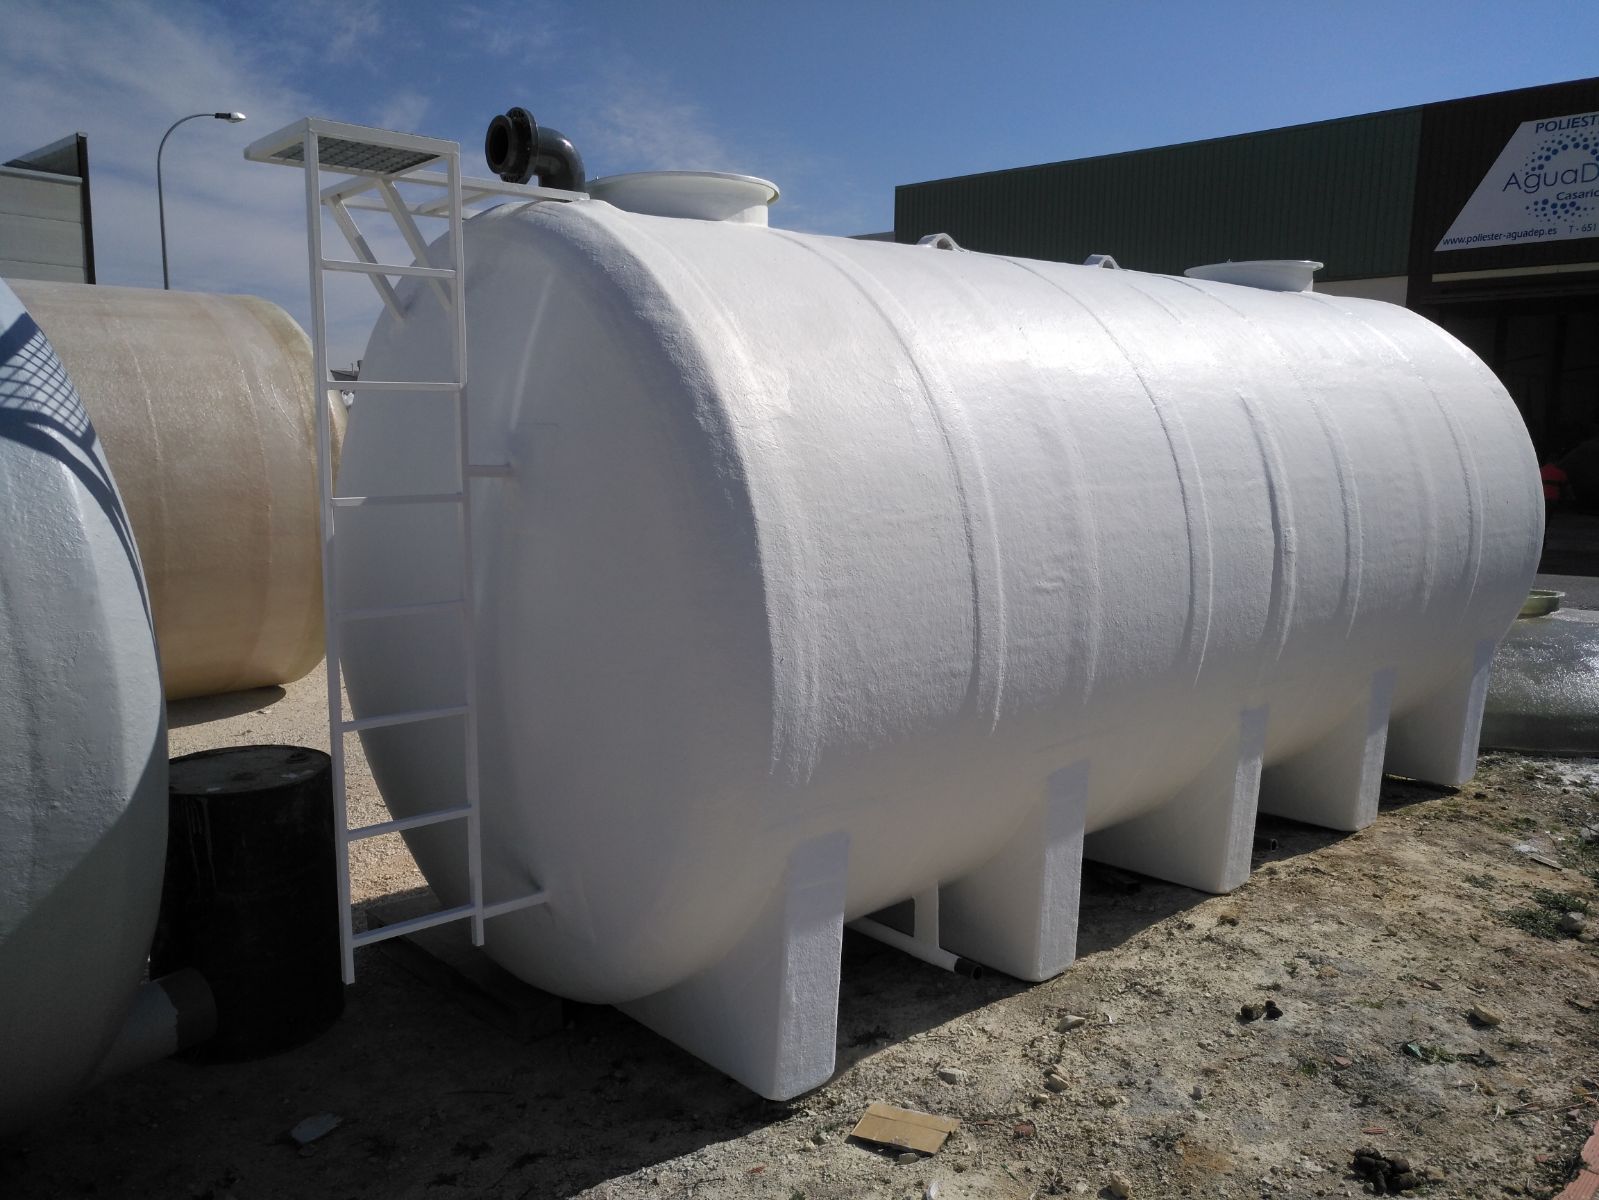 Depuradora de aguas residuales domésticas Remosa Necor - Industria del agua  - Depuradora de aguas residuales domésticas